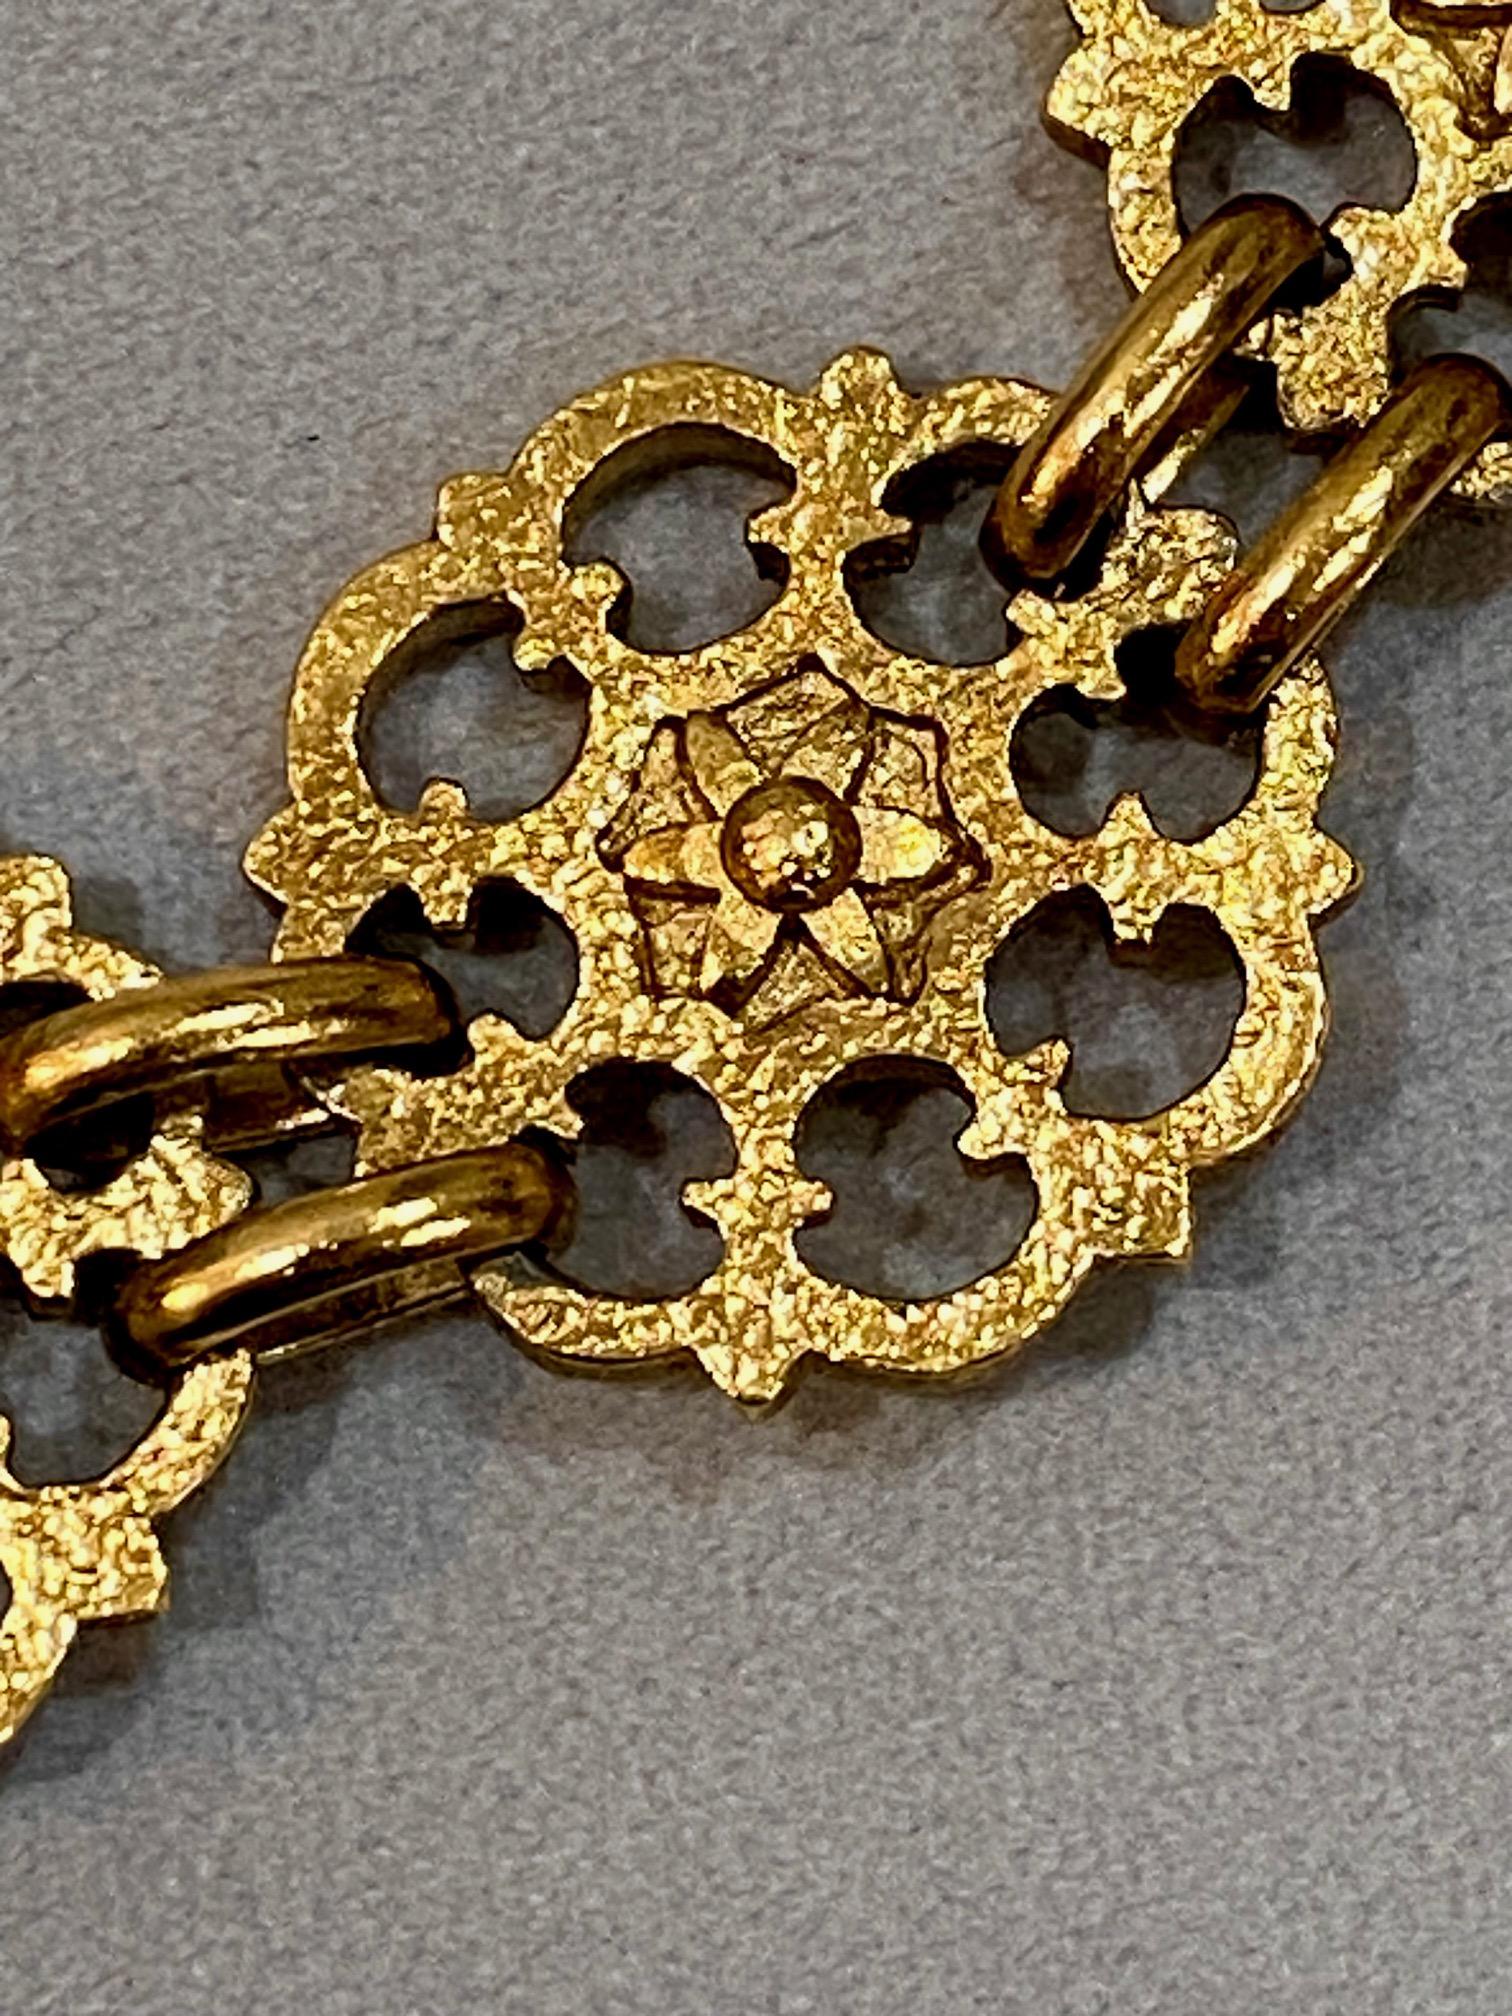 Yves Saint Laurent, Rive Gauche, 1980s Gold Belt / Necklace For Sale 7